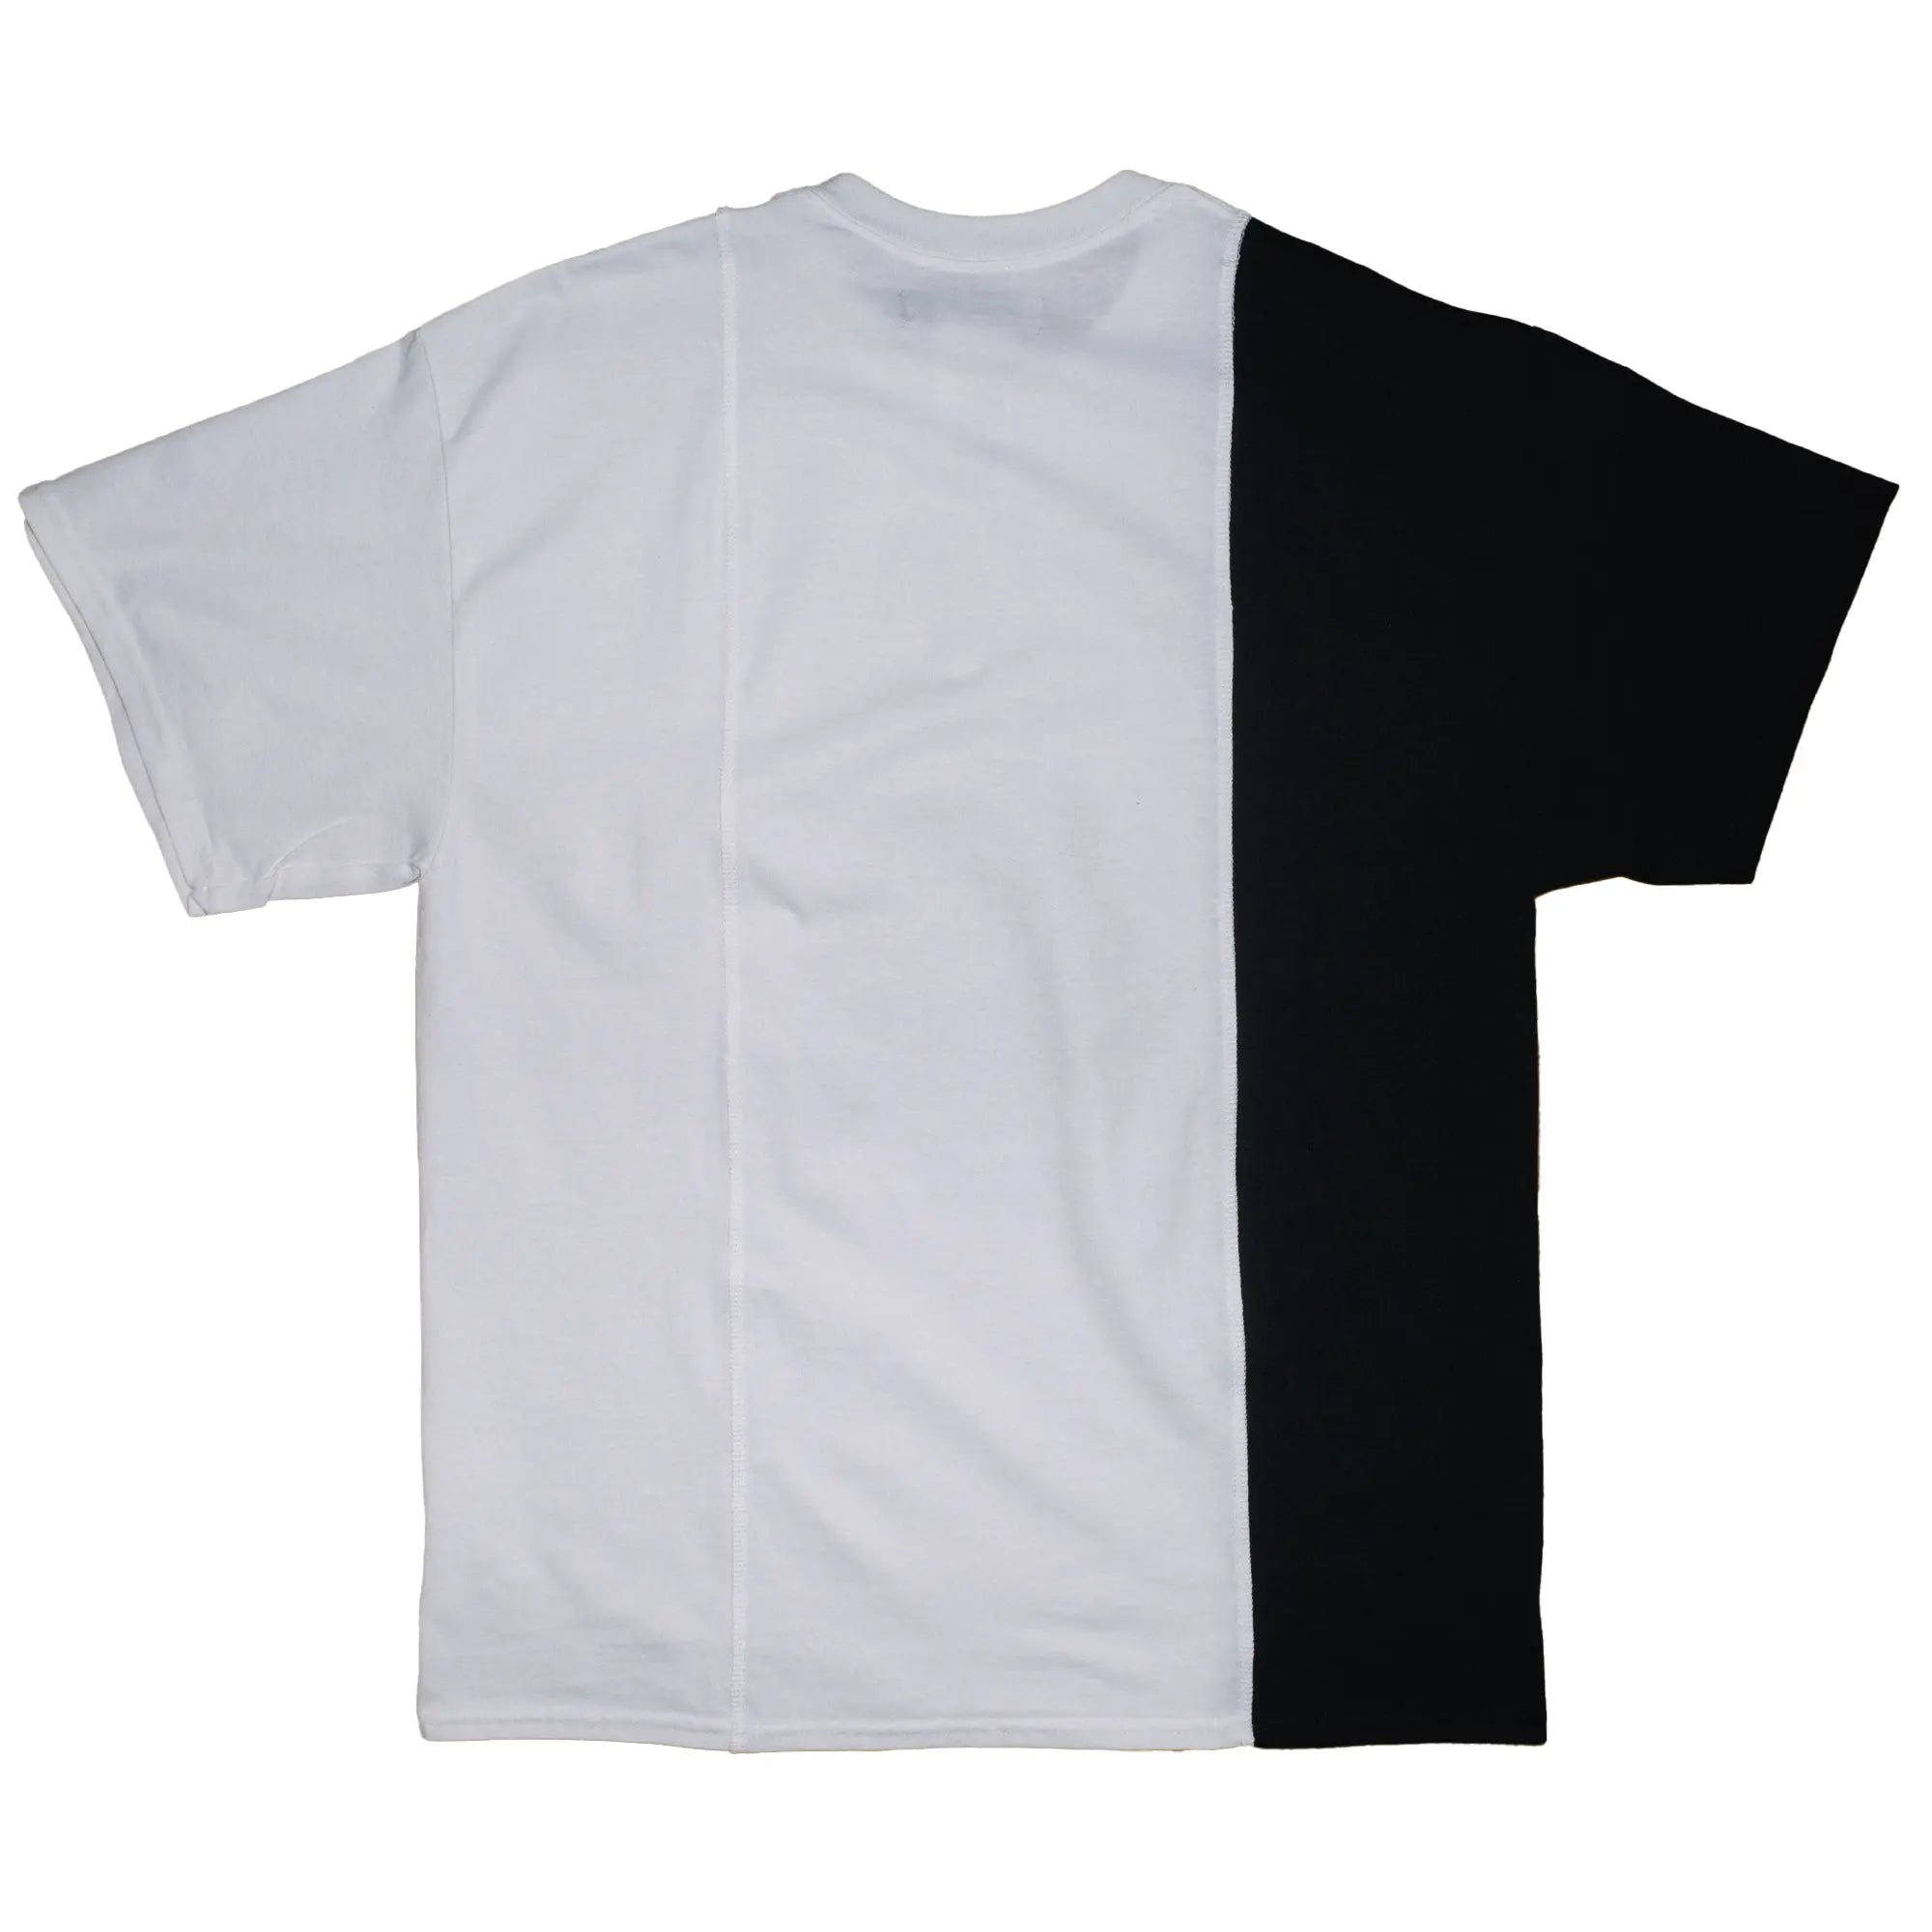 CUT-UP T-shirt no. 2312 - XL